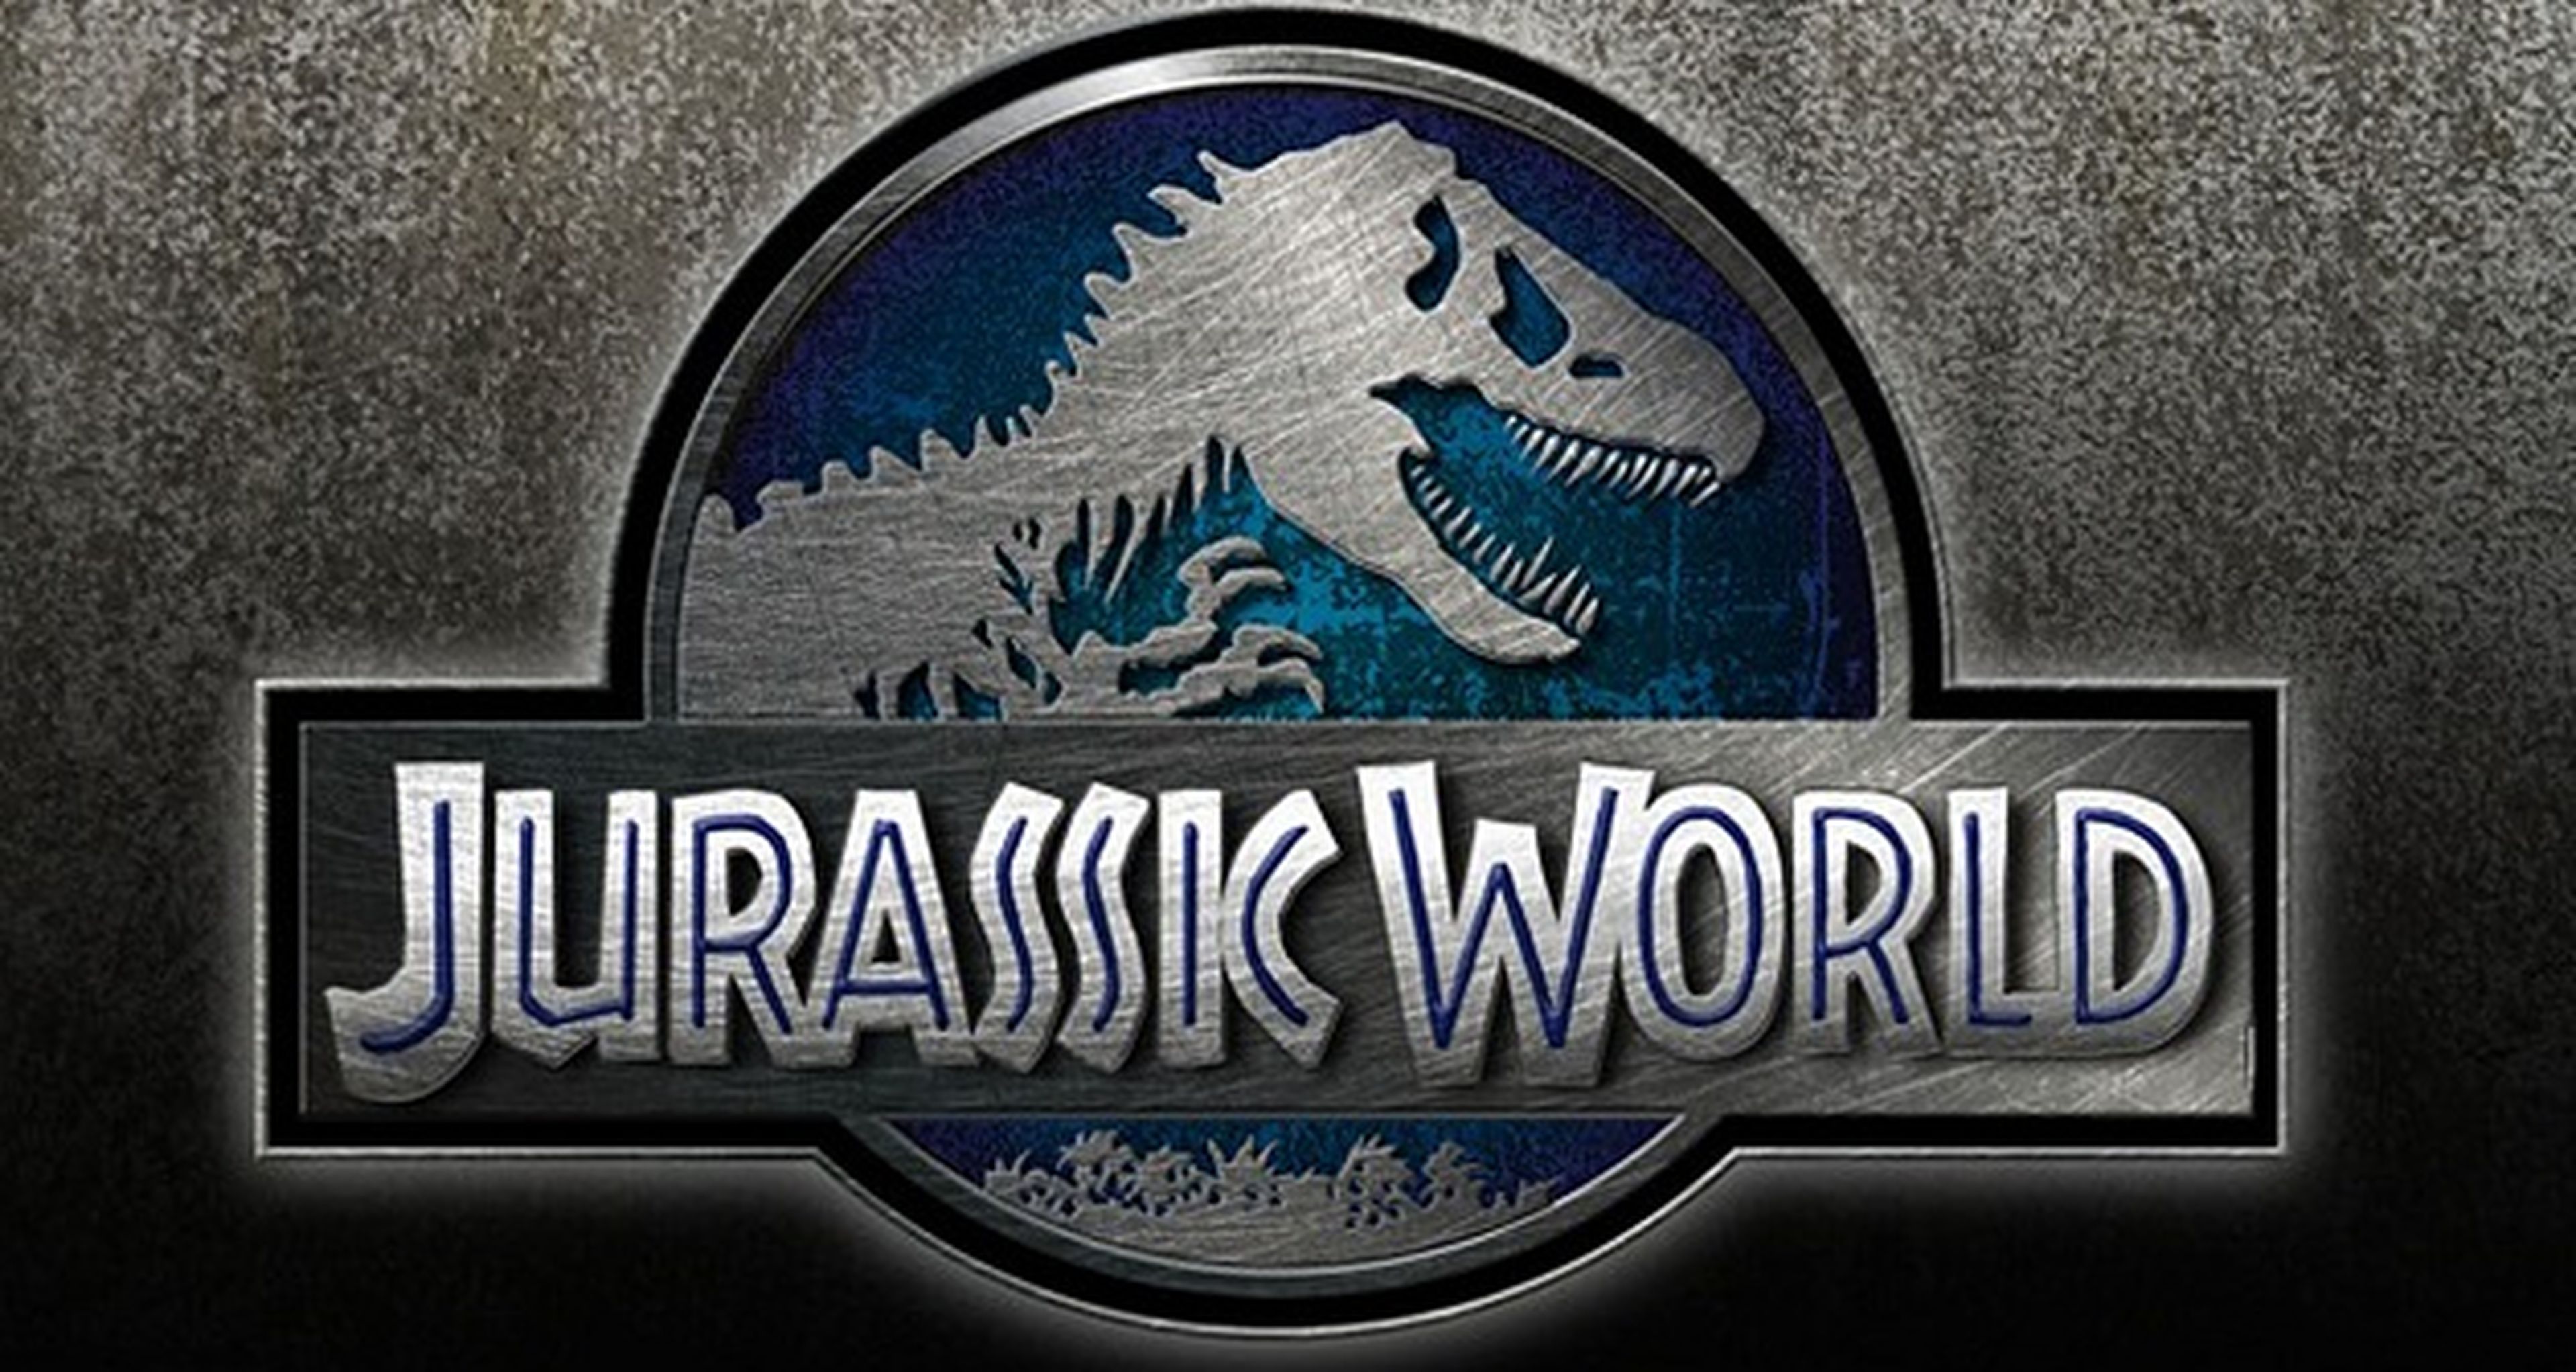 Jurassic World muestra nuevas imágenes de los dinosaurios